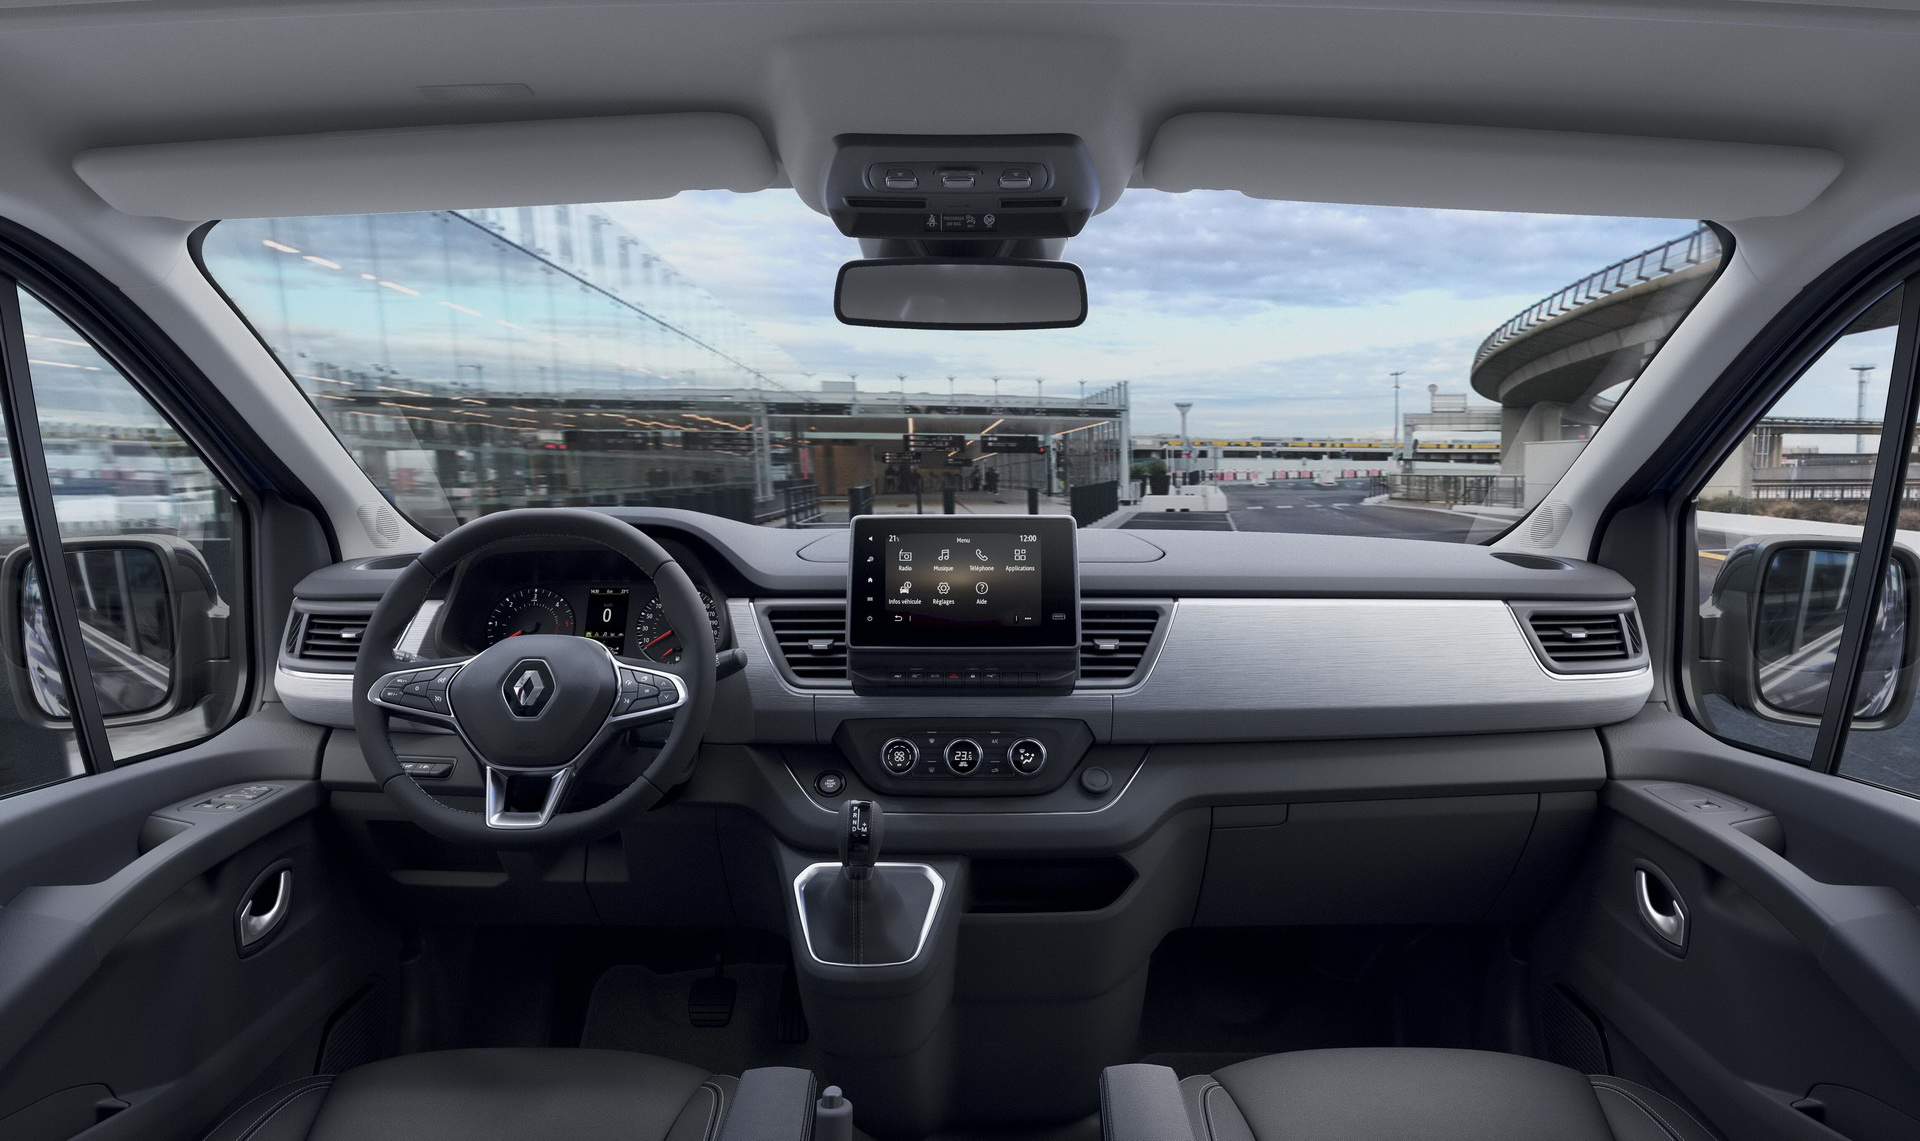 2021 Renault Trafic, yeni yüzü ve teknolojileriyle tanıtıldı